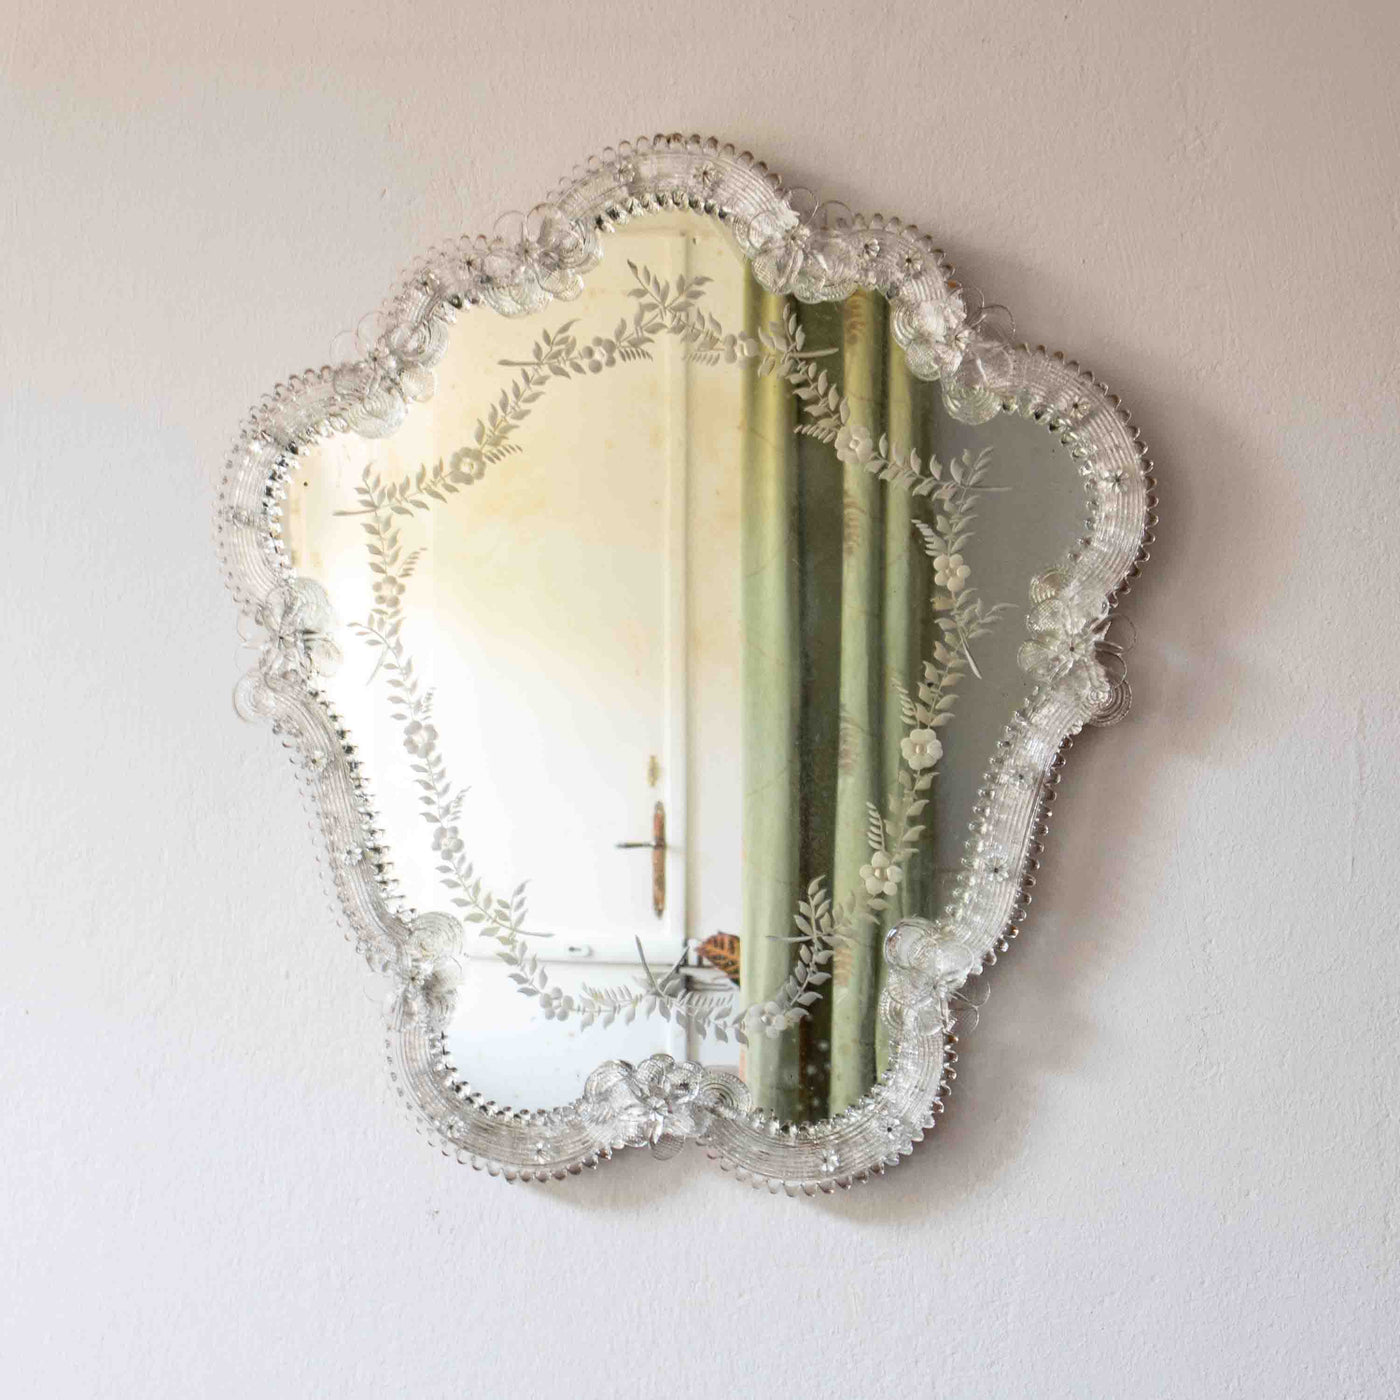 Spiegel aus Murano, Vorderseite